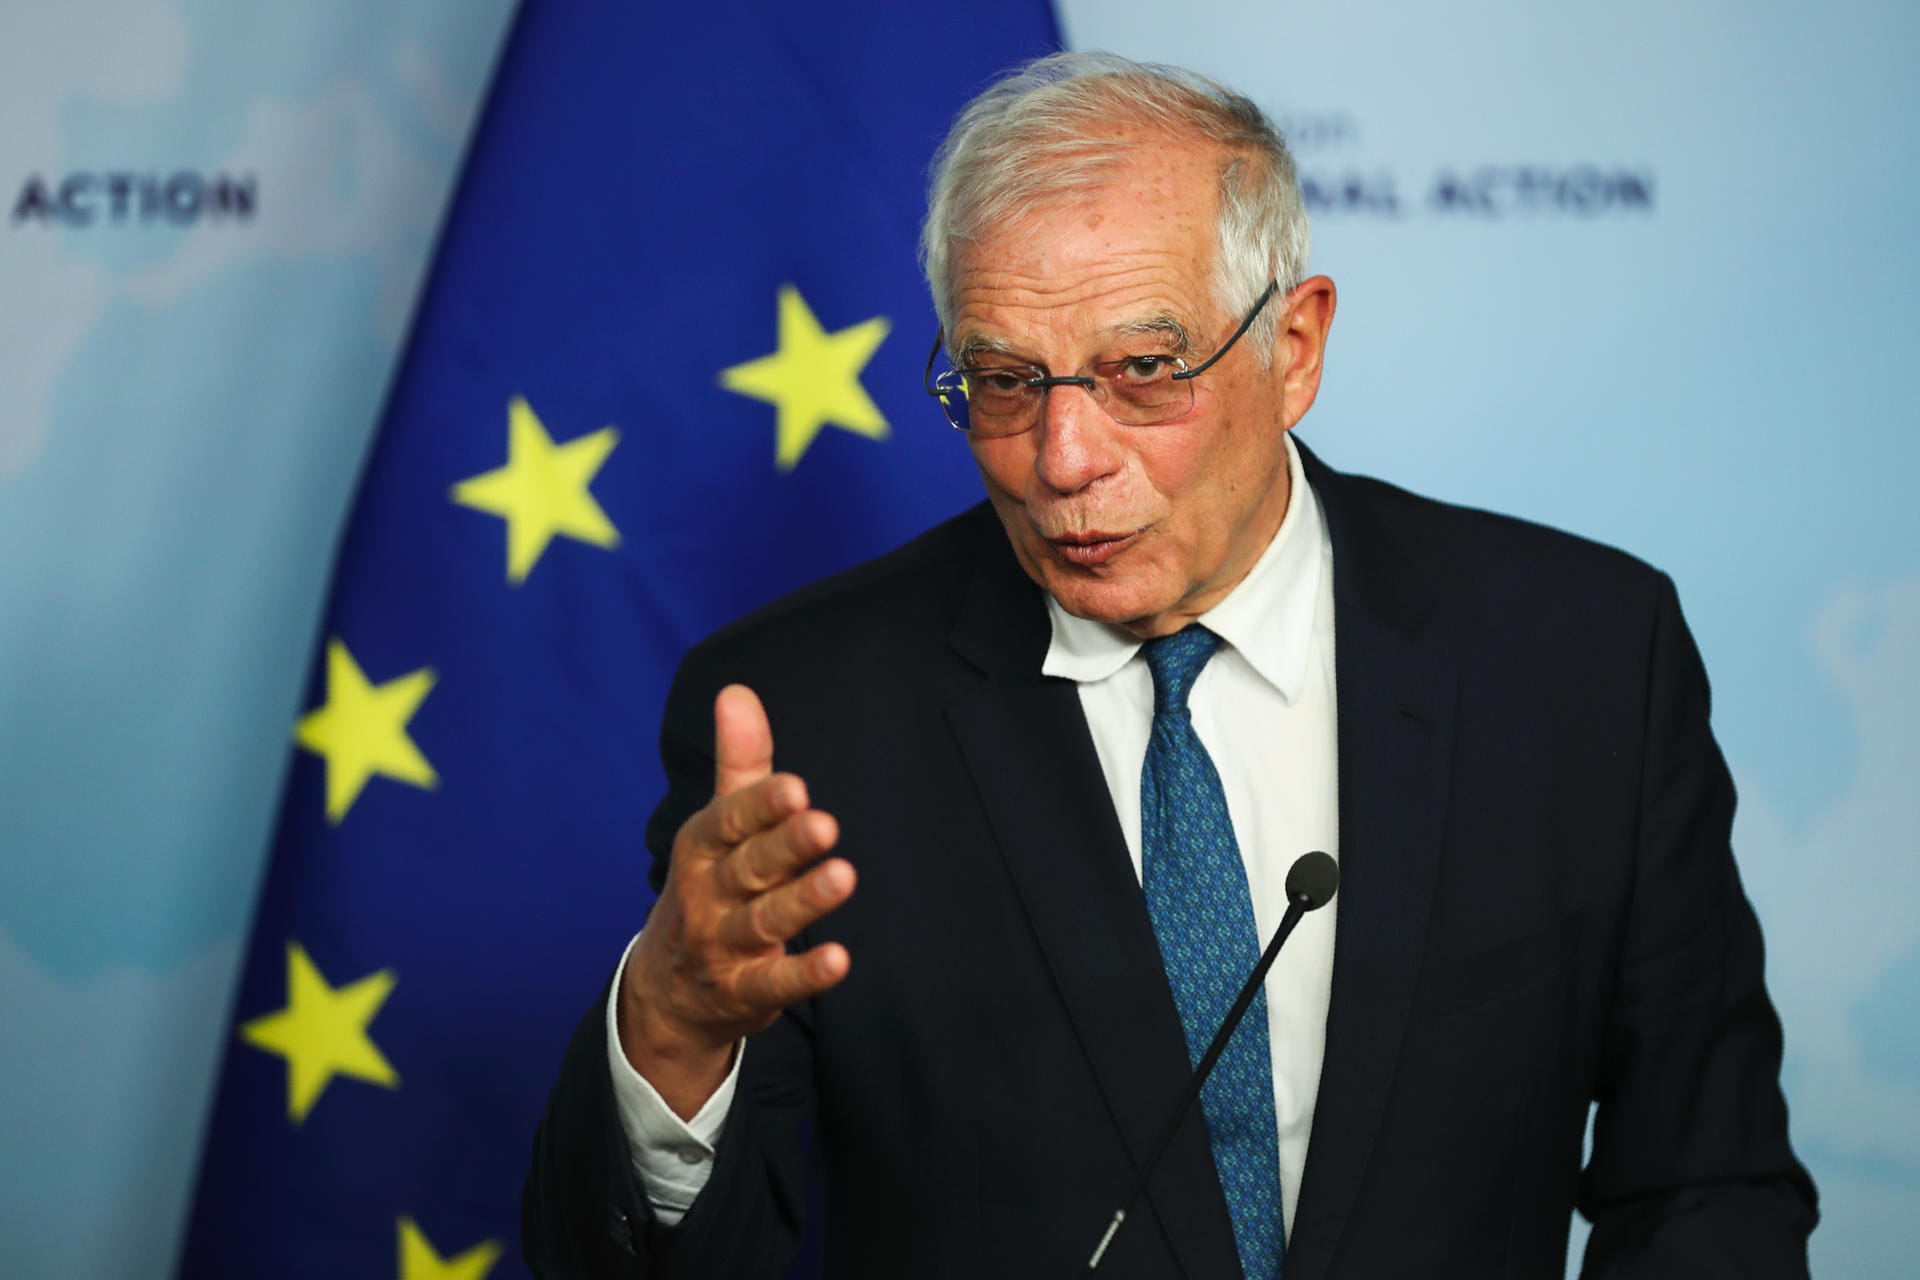 Der EU-Außenbeauftragte Josep Borrell hat den iranischen Vergeltungsangriff auf US-Soldaten im Irak als "weiteres Beispiel der Eskalation und wachsender Konfrontation" bezeichnet. Es sei in niemandes Interesse, die Gewalt weiter zu steigern, sagte Borrell am Mittwoch in Brüssel. Die EU-Außenminister würden am Freitag bei einem Sondertreffen darüber beraten, was die Staatengemeinschaft tun kann, um die Region kurz-, mittel- und langfristig zu stabilisieren.